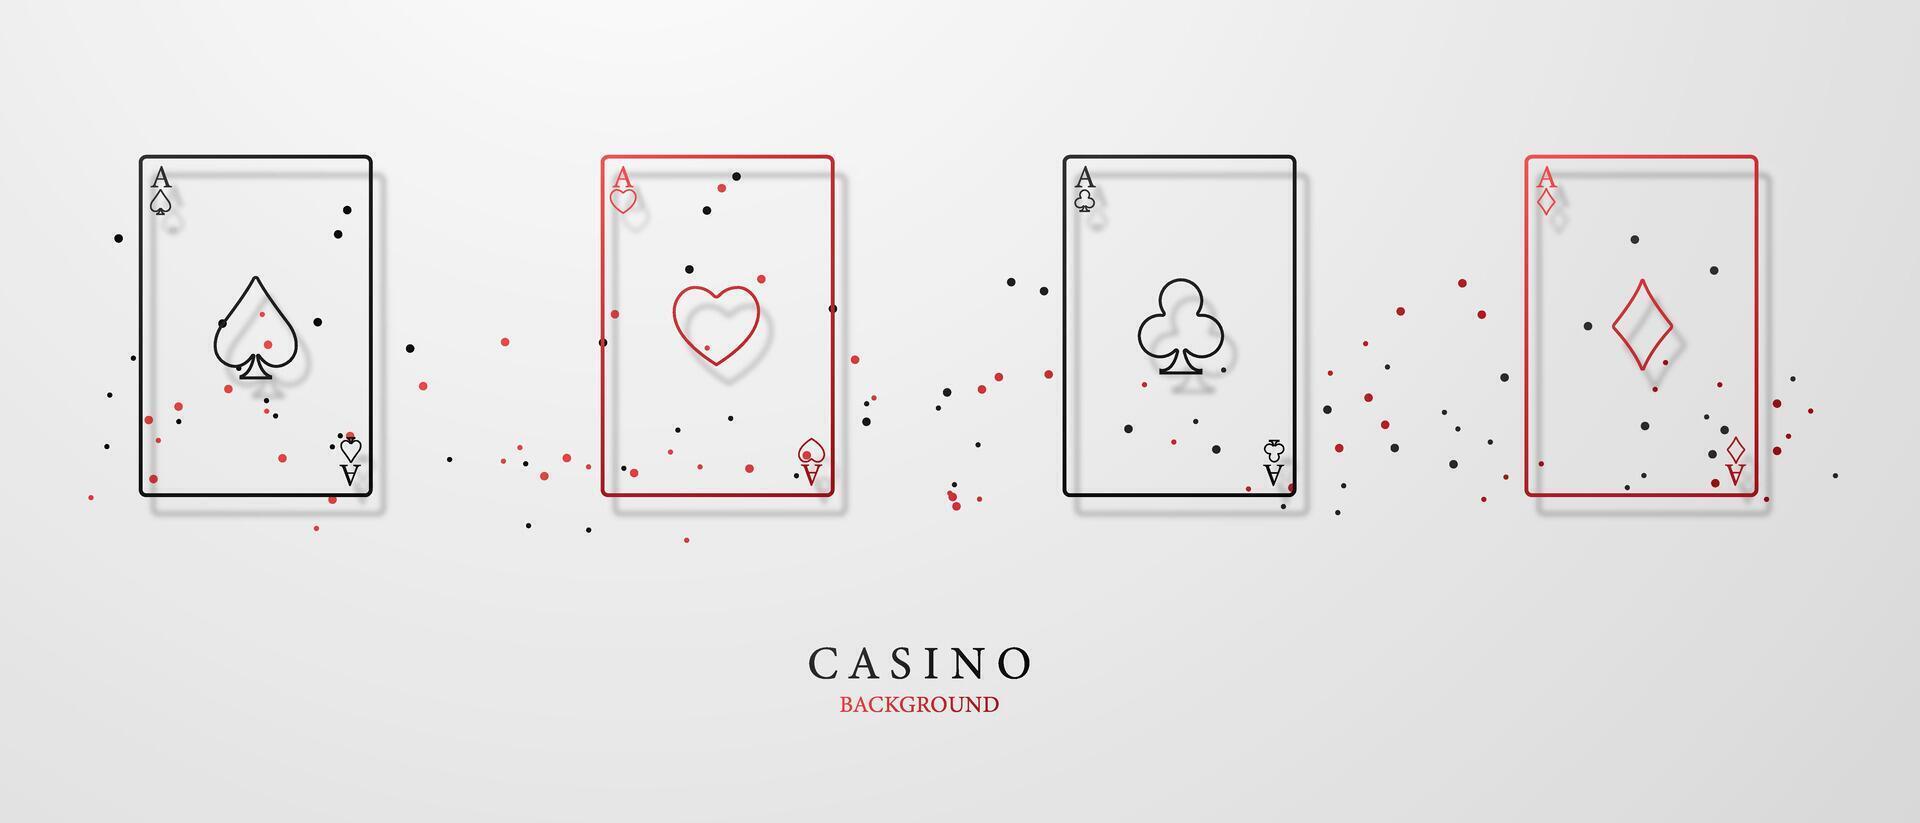 casino design background for gambling money for roulette or poker vector illustration vector